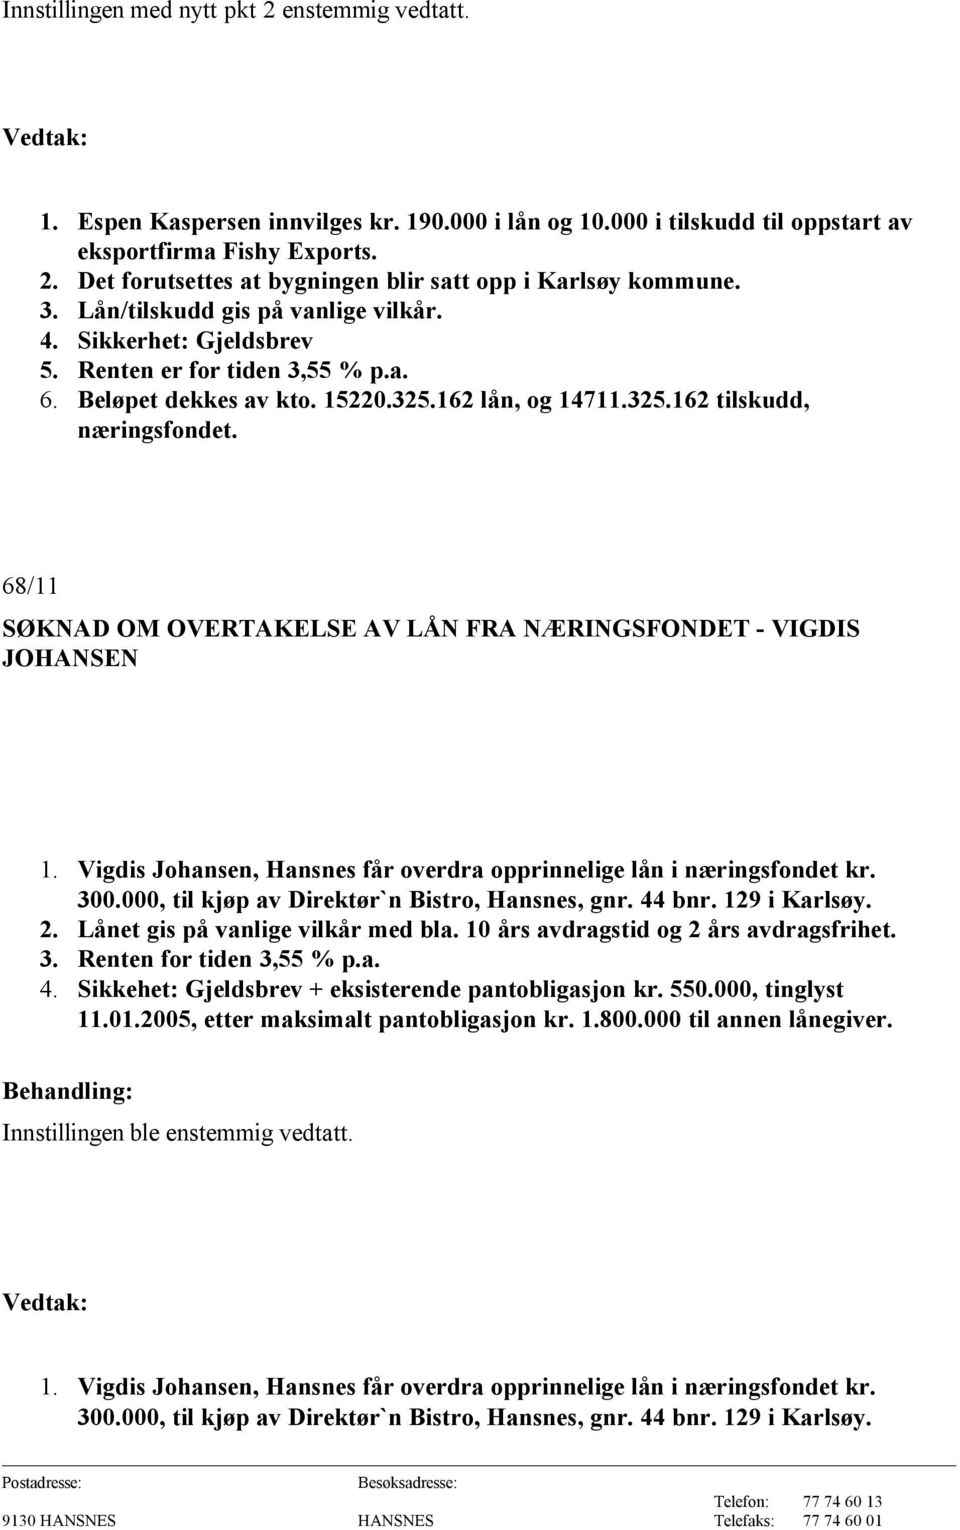 68/11 SØKNAD OM OVERTAKELSE AV LÅN FRA NÆRINGSFONDET - VIGDIS JOHANSEN 1. Vigdis Johansen, Hansnes får overdra opprinnelige lån i næringsfondet kr. 300.